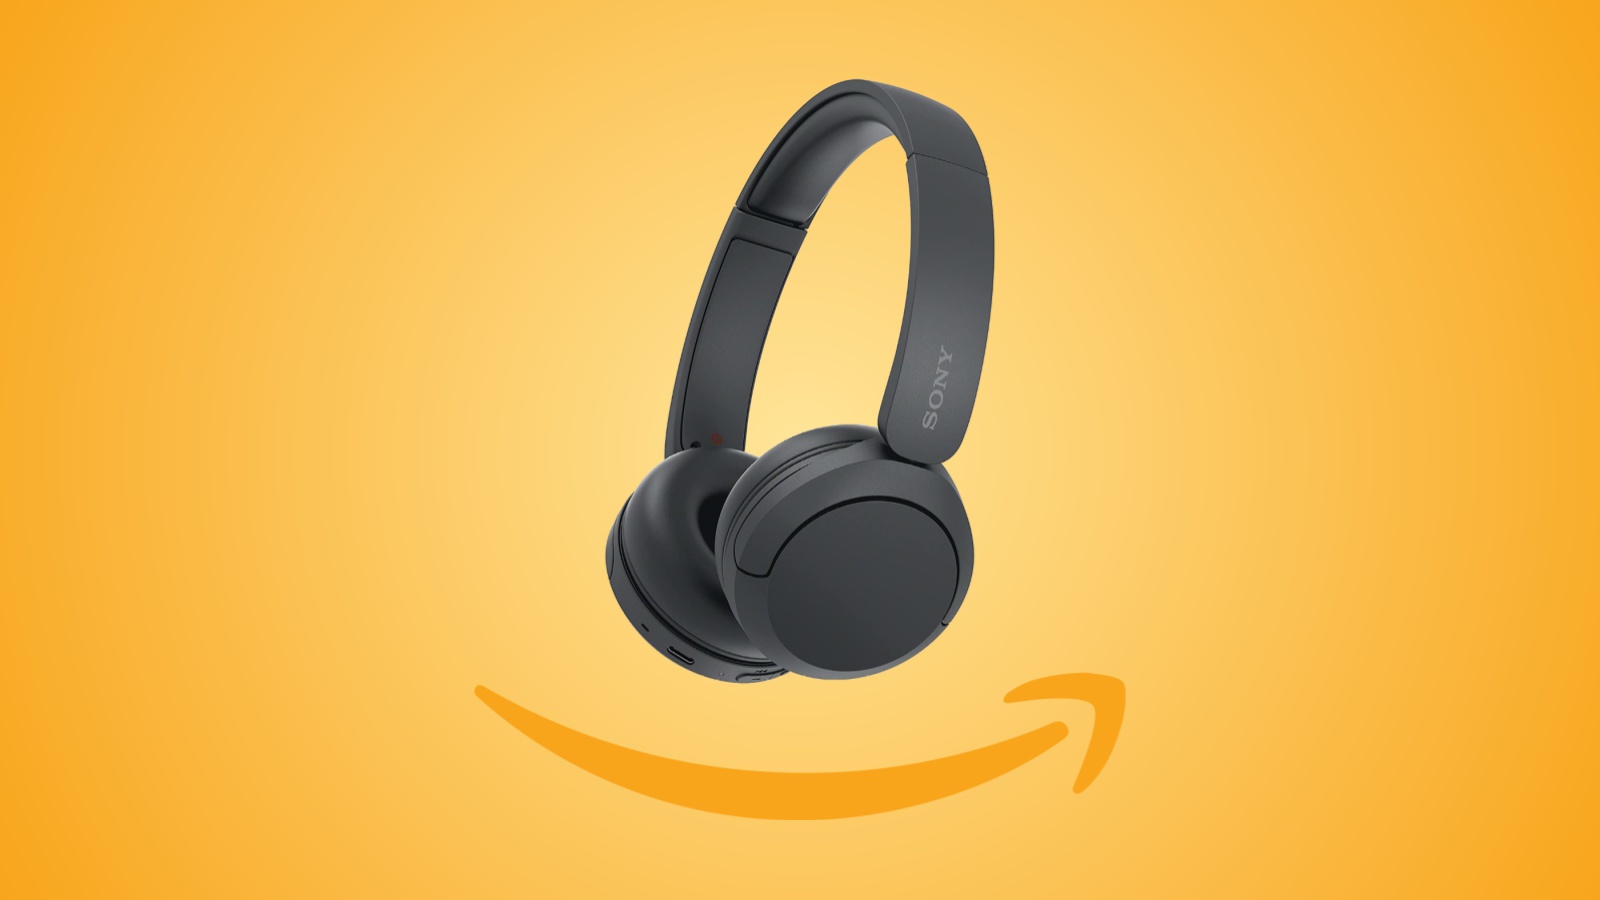 Offerte Amazon: Cuffie Bluetooth wireless WH-CH520 in sconto al prezzo minimo storico